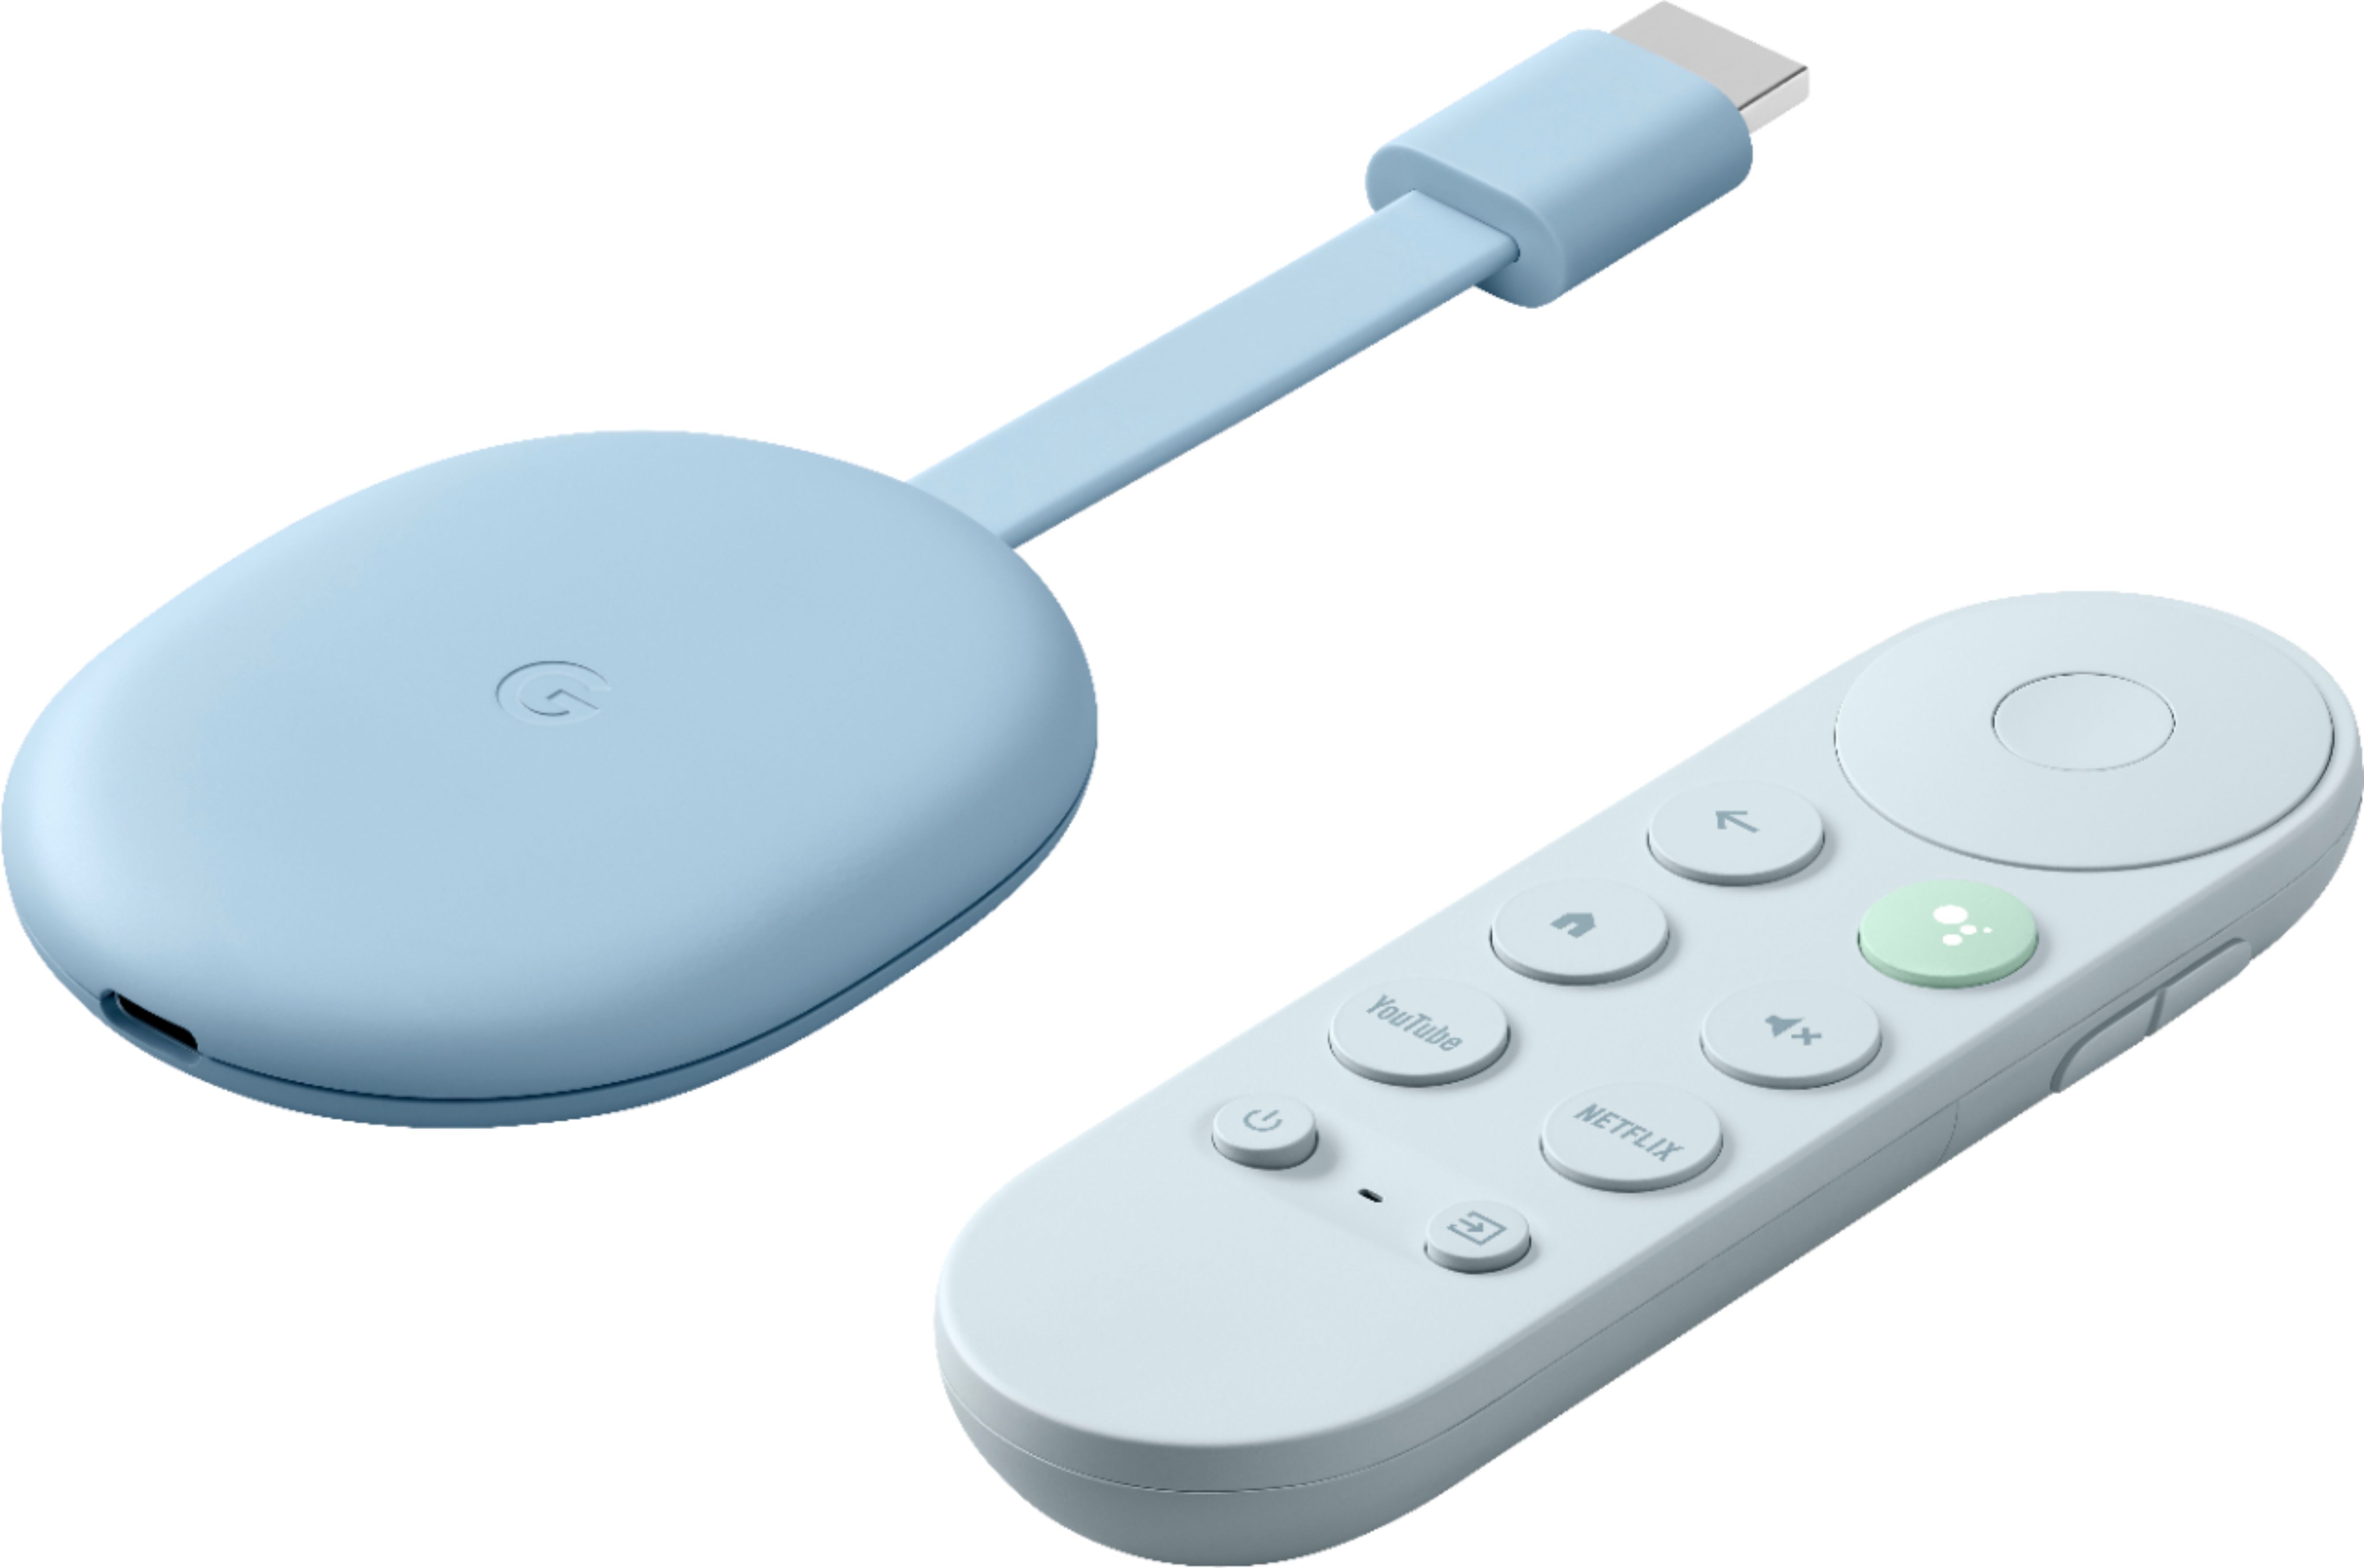 Google ने Chromecast को Google TV नामक एक पूर्ण विकसित, एंड्रॉइड-आधारित ऑपरेटिंग सिस्टम के साथ अपग्रेड किया है। उन्होंने इसे रिमोट से भी सुसज्जित किया, जिससे $49 का डोंगल टीवी स्ट्रीमिंग के लिए आपकी वन-स्टॉप शॉप बन गया।